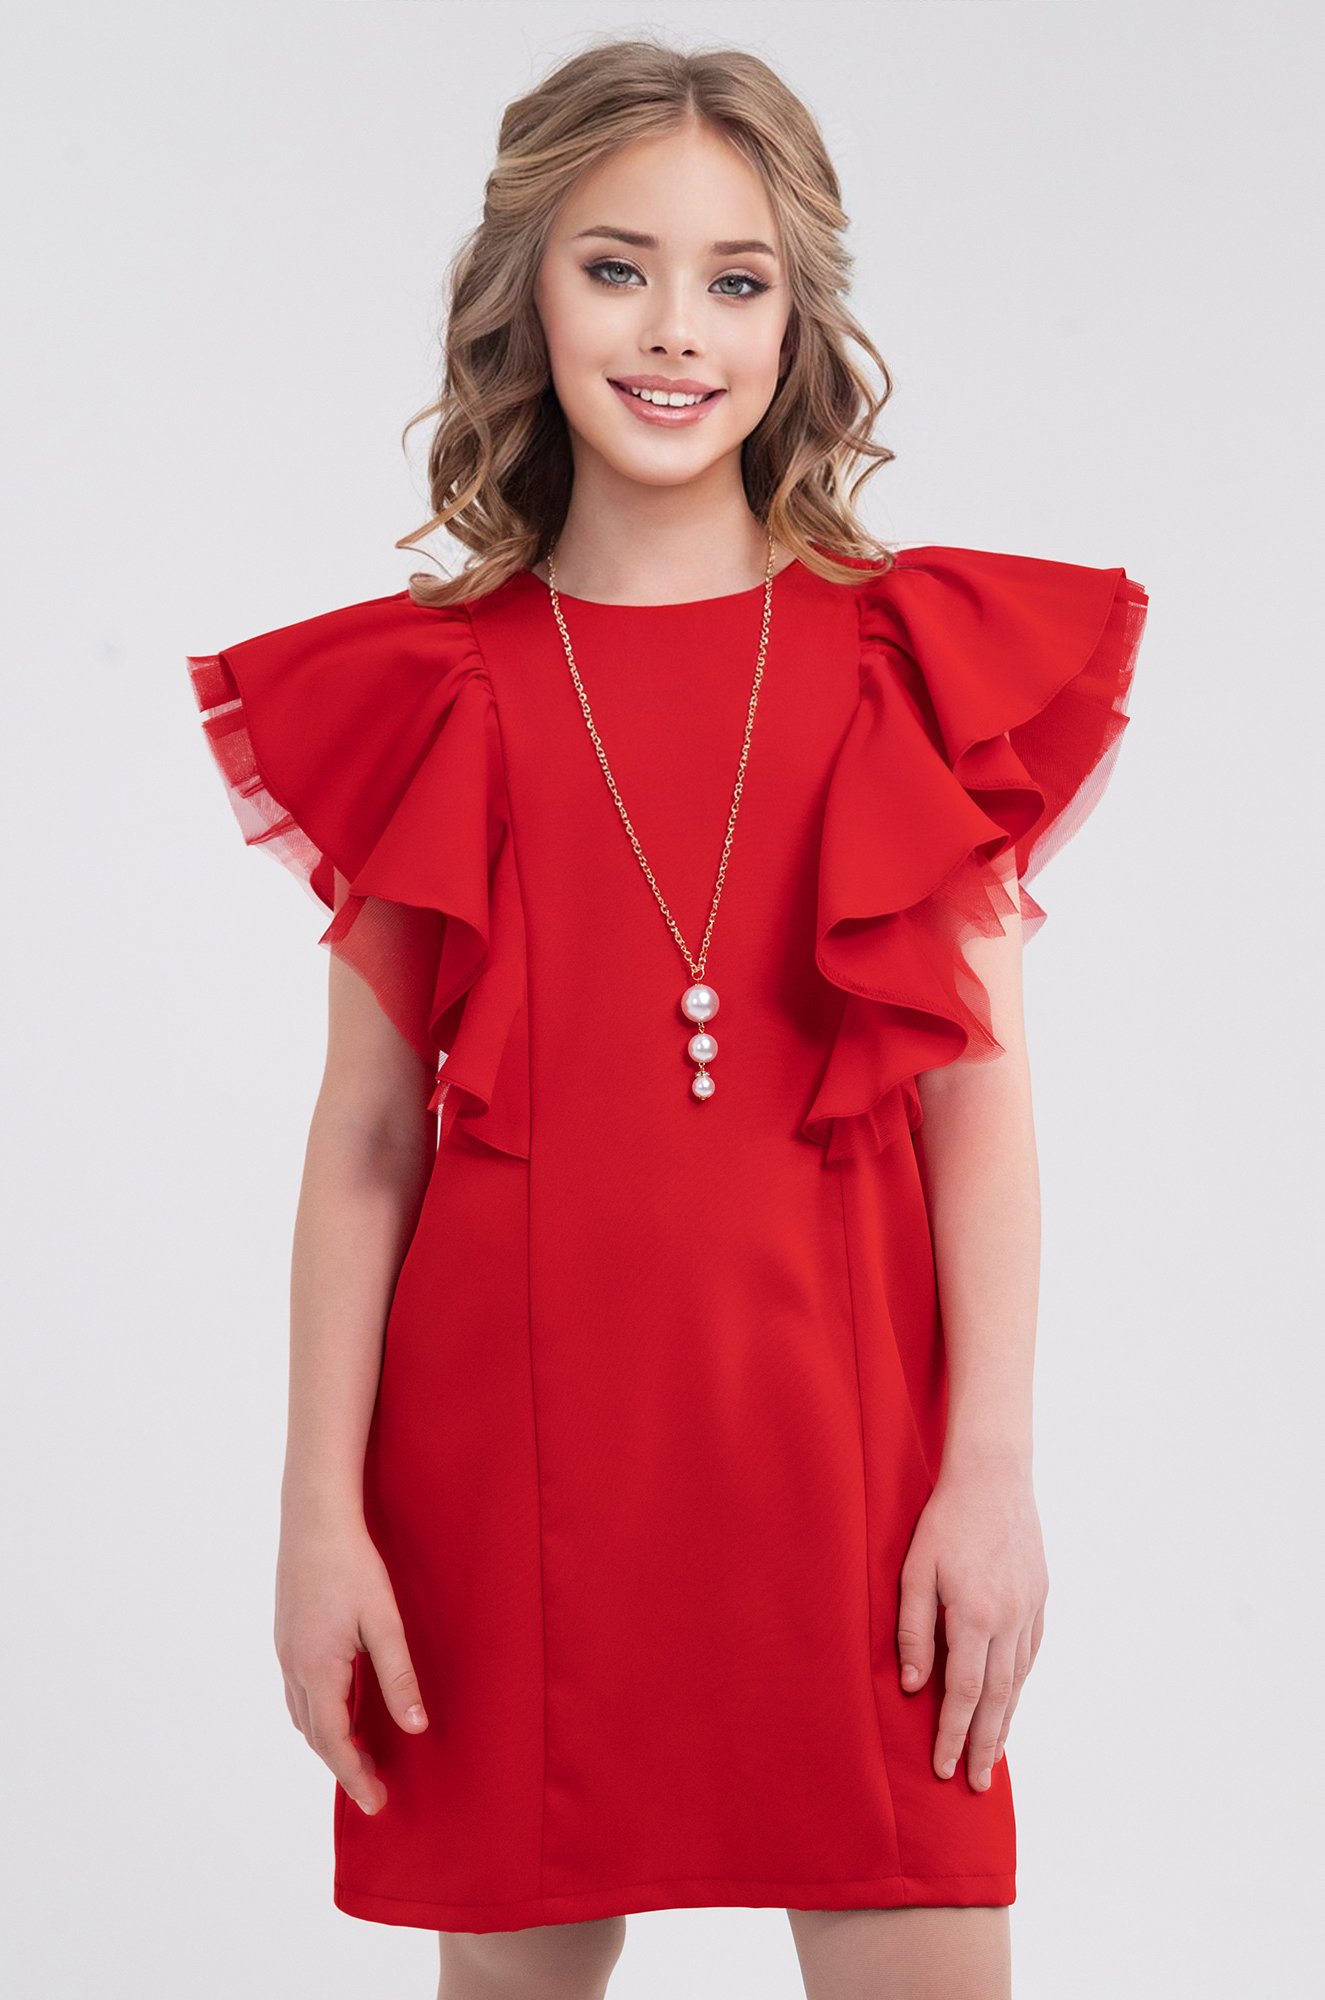 Нарядные платья для девочек - купить недорого с доставкой - интернет-магазин BABYFOX